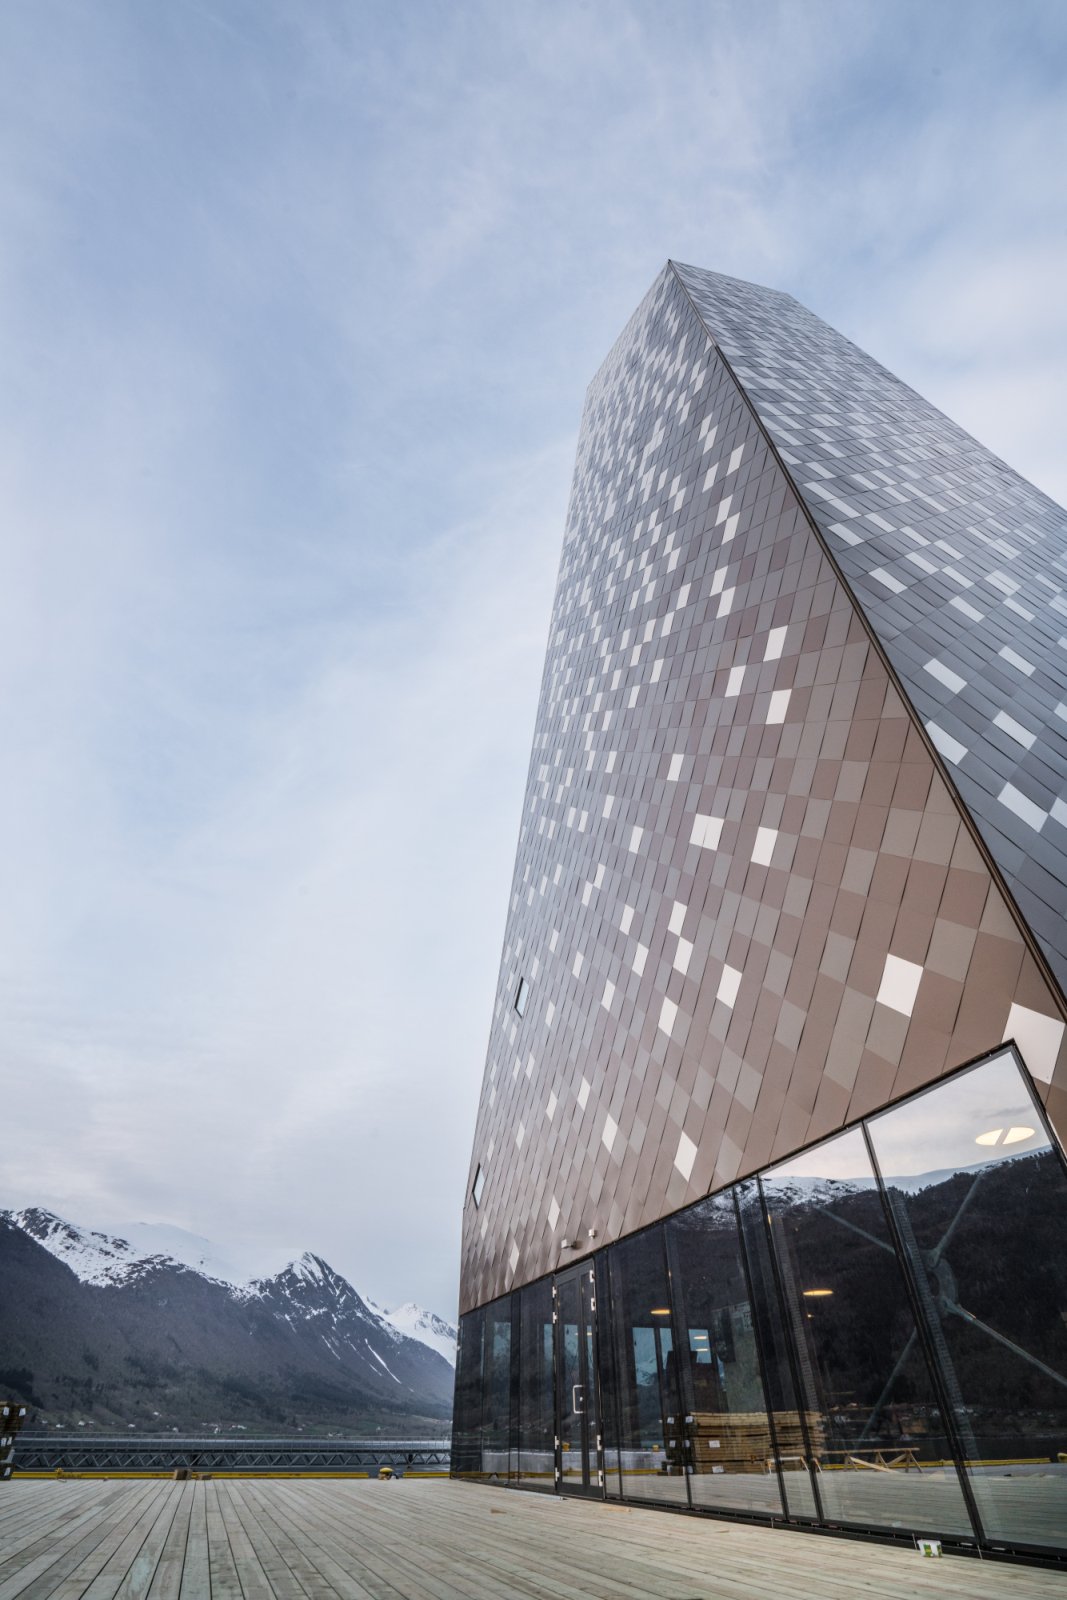 Norwegian Mountaineering Center